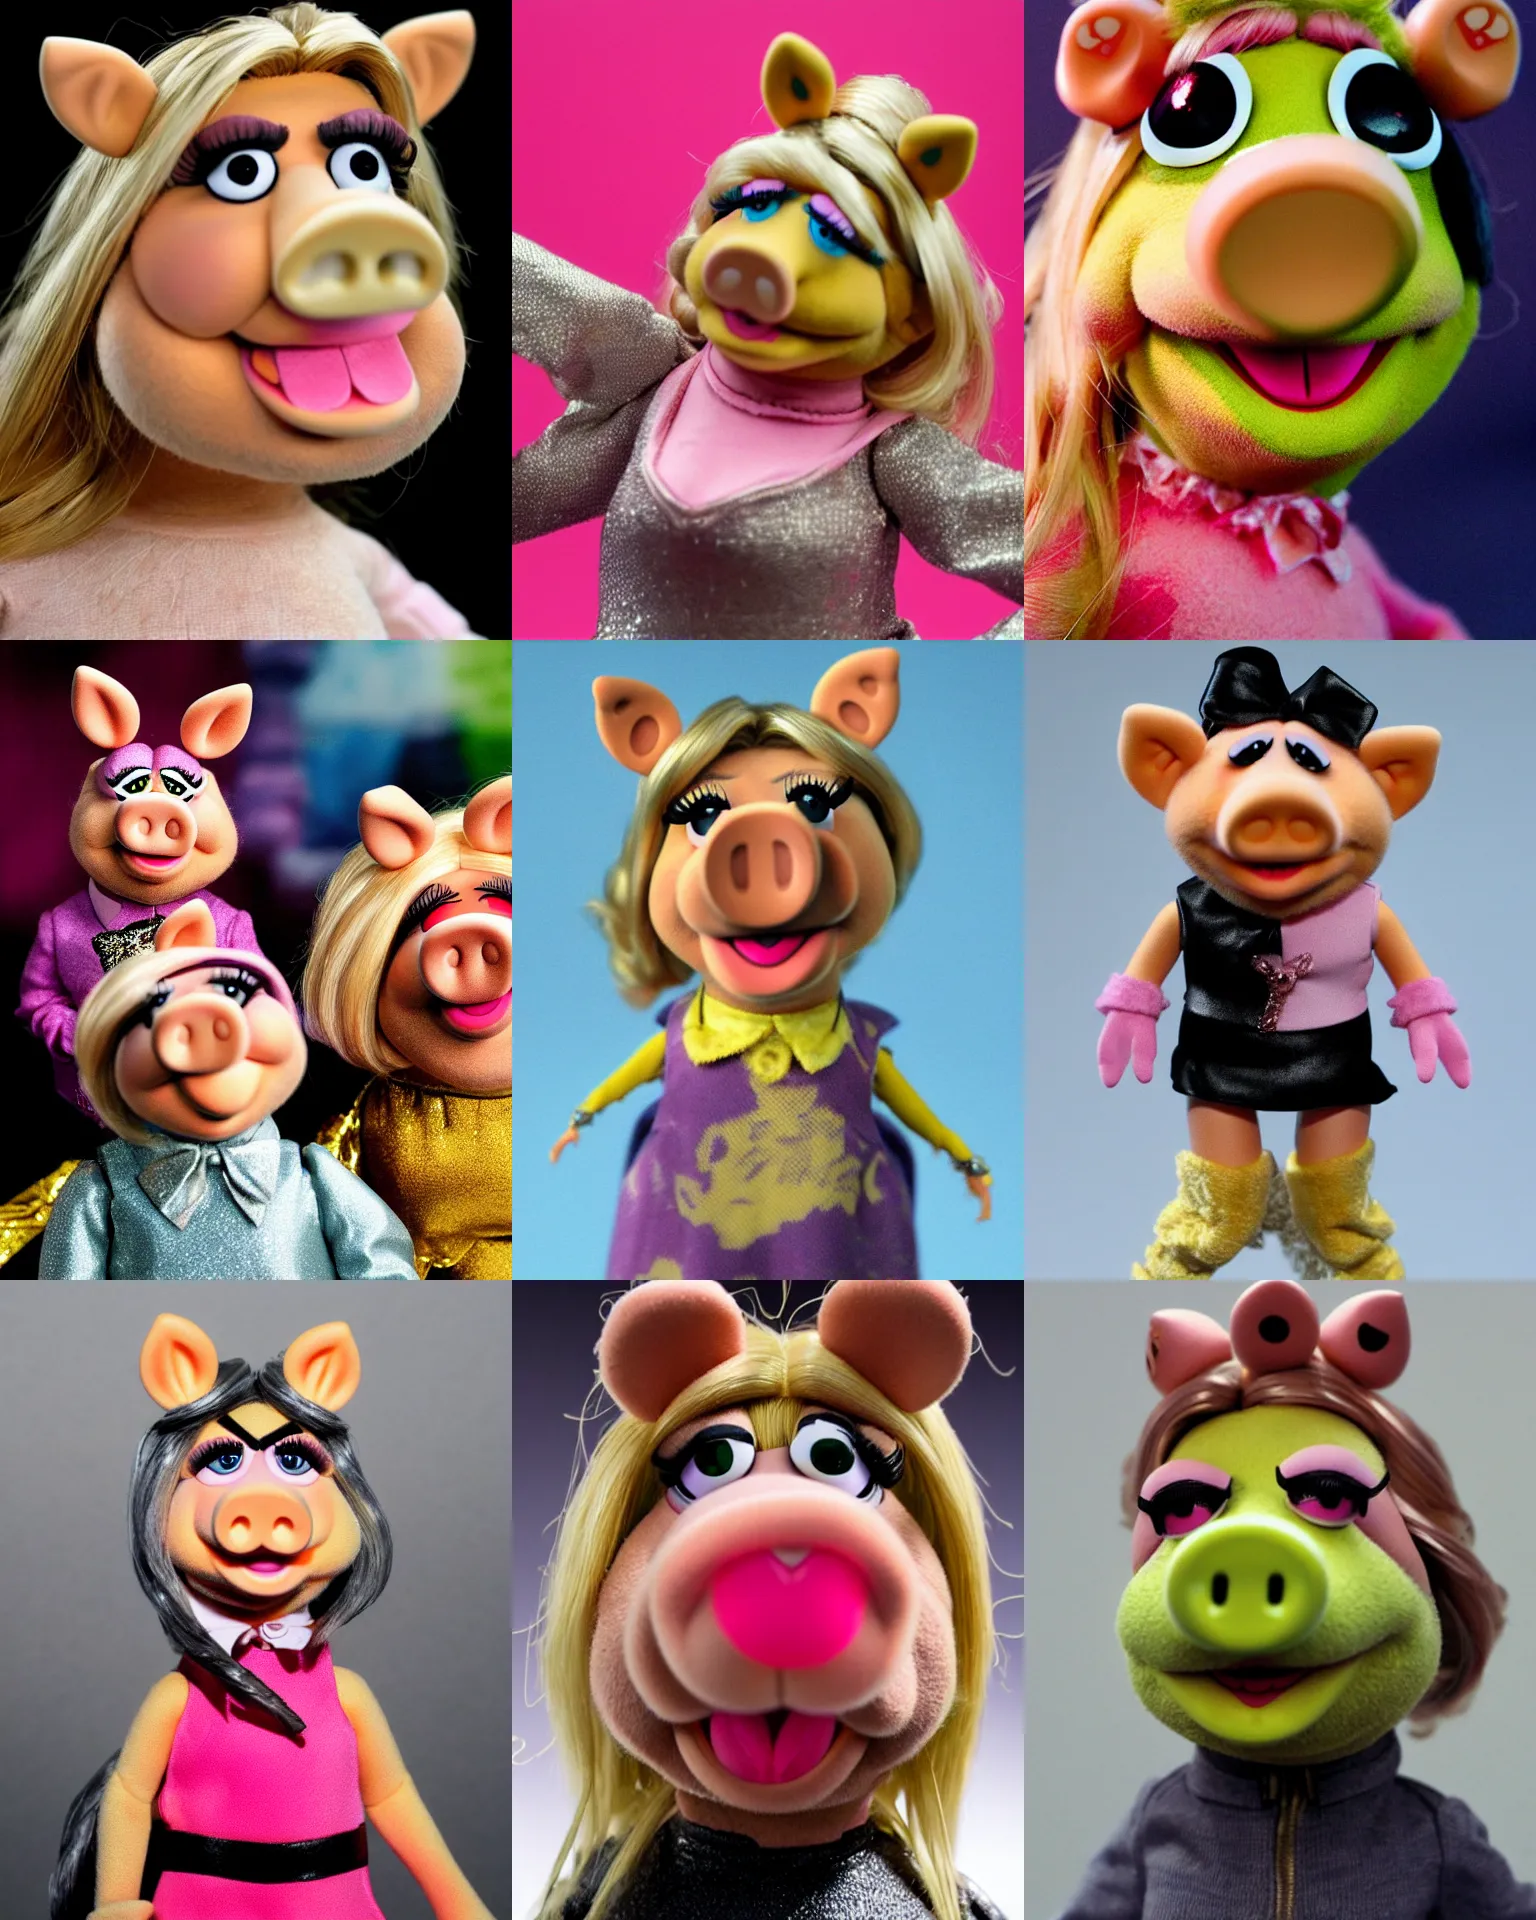 DisneyBound  Miss piggy muppets, Miss piggy, Piggy muppets